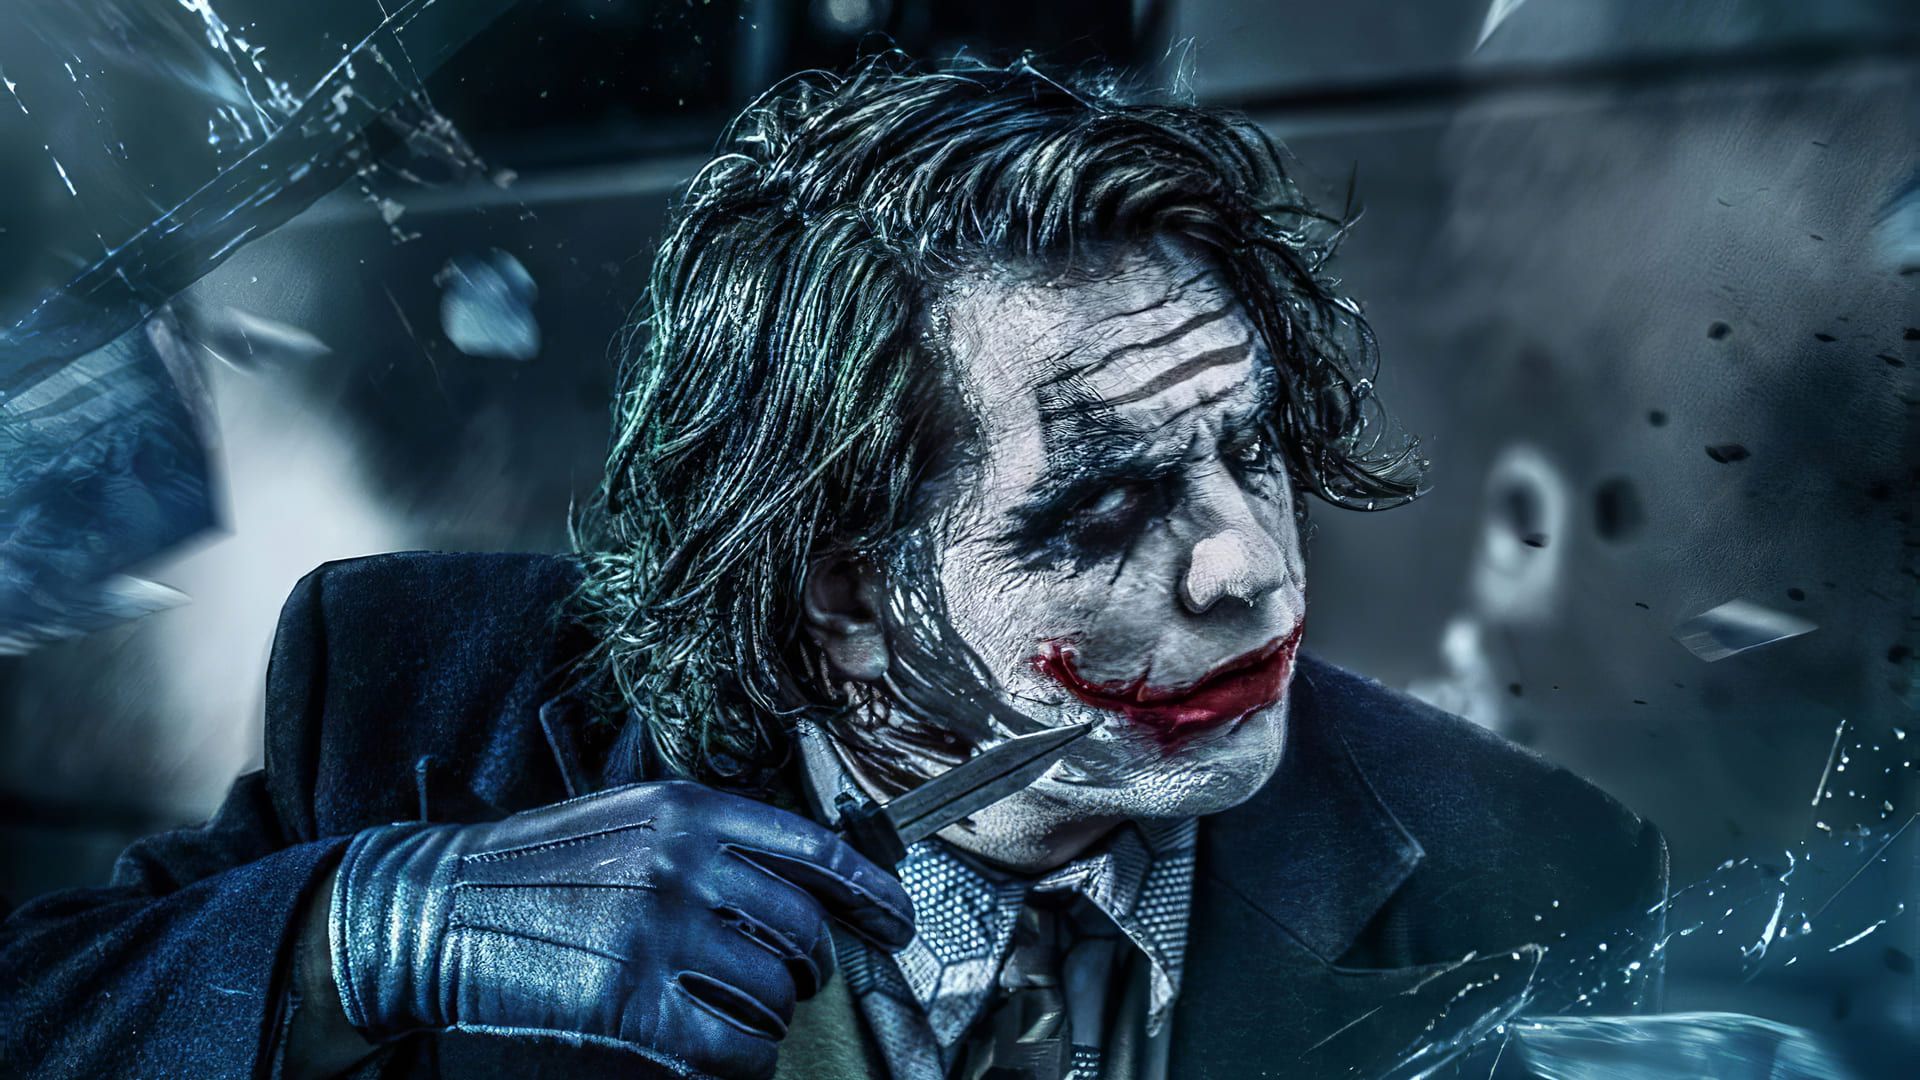 Joaquin Phoenix In And As Joker 2019 4k Ultra Hd Mobile  Joker 2019 Wallpaper  Hd  950x1689 Wallpaper  teahubio